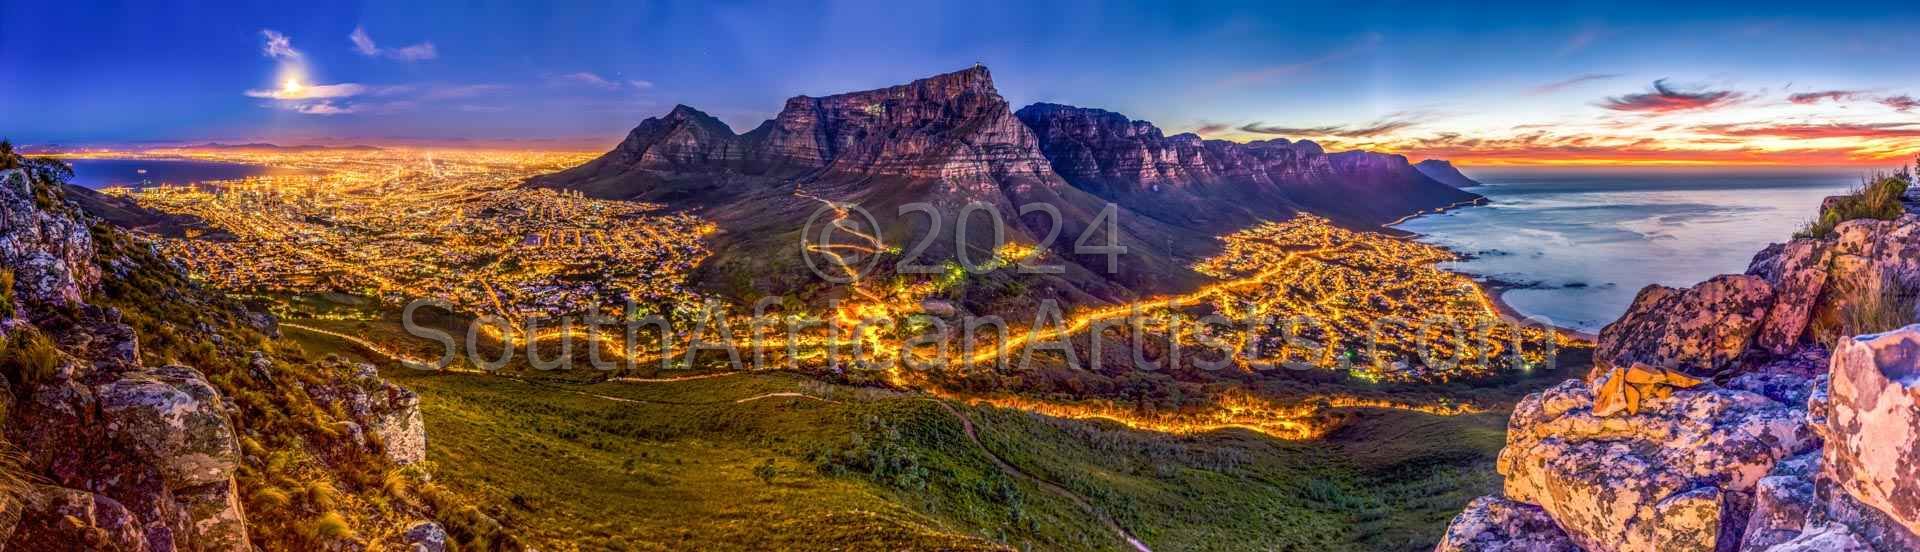 Cape Town Beauty